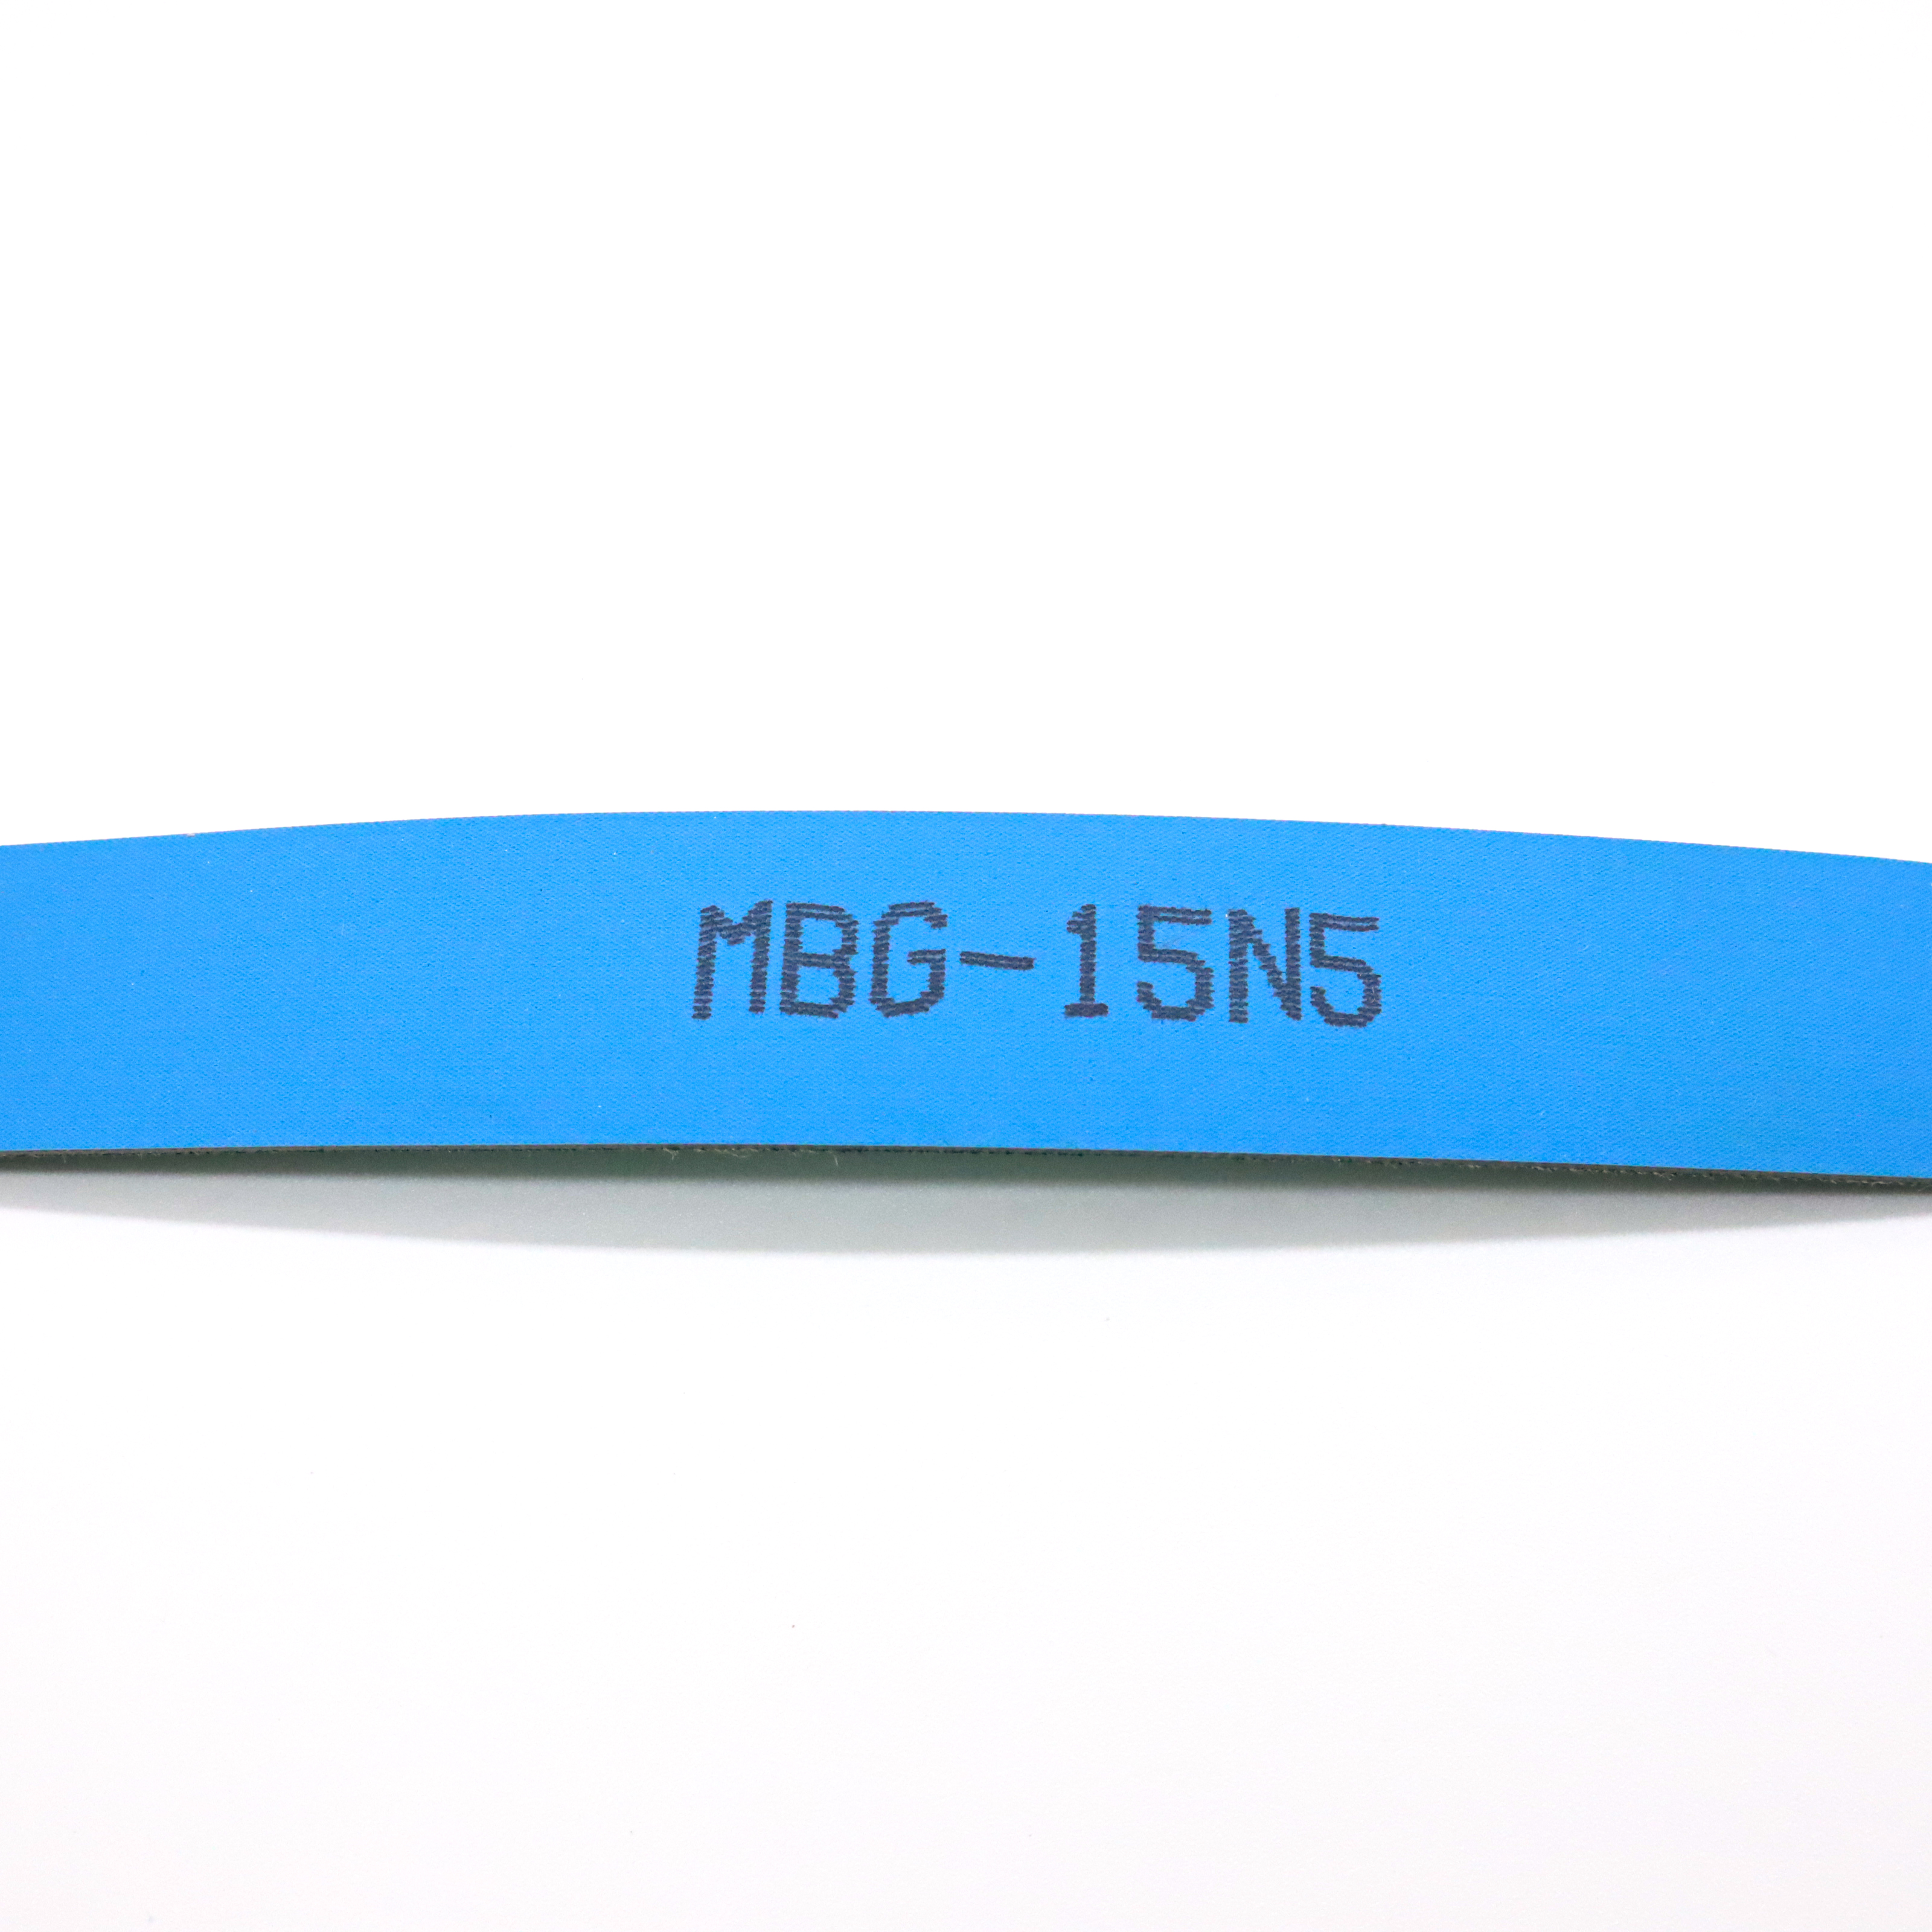 MBG-15N5